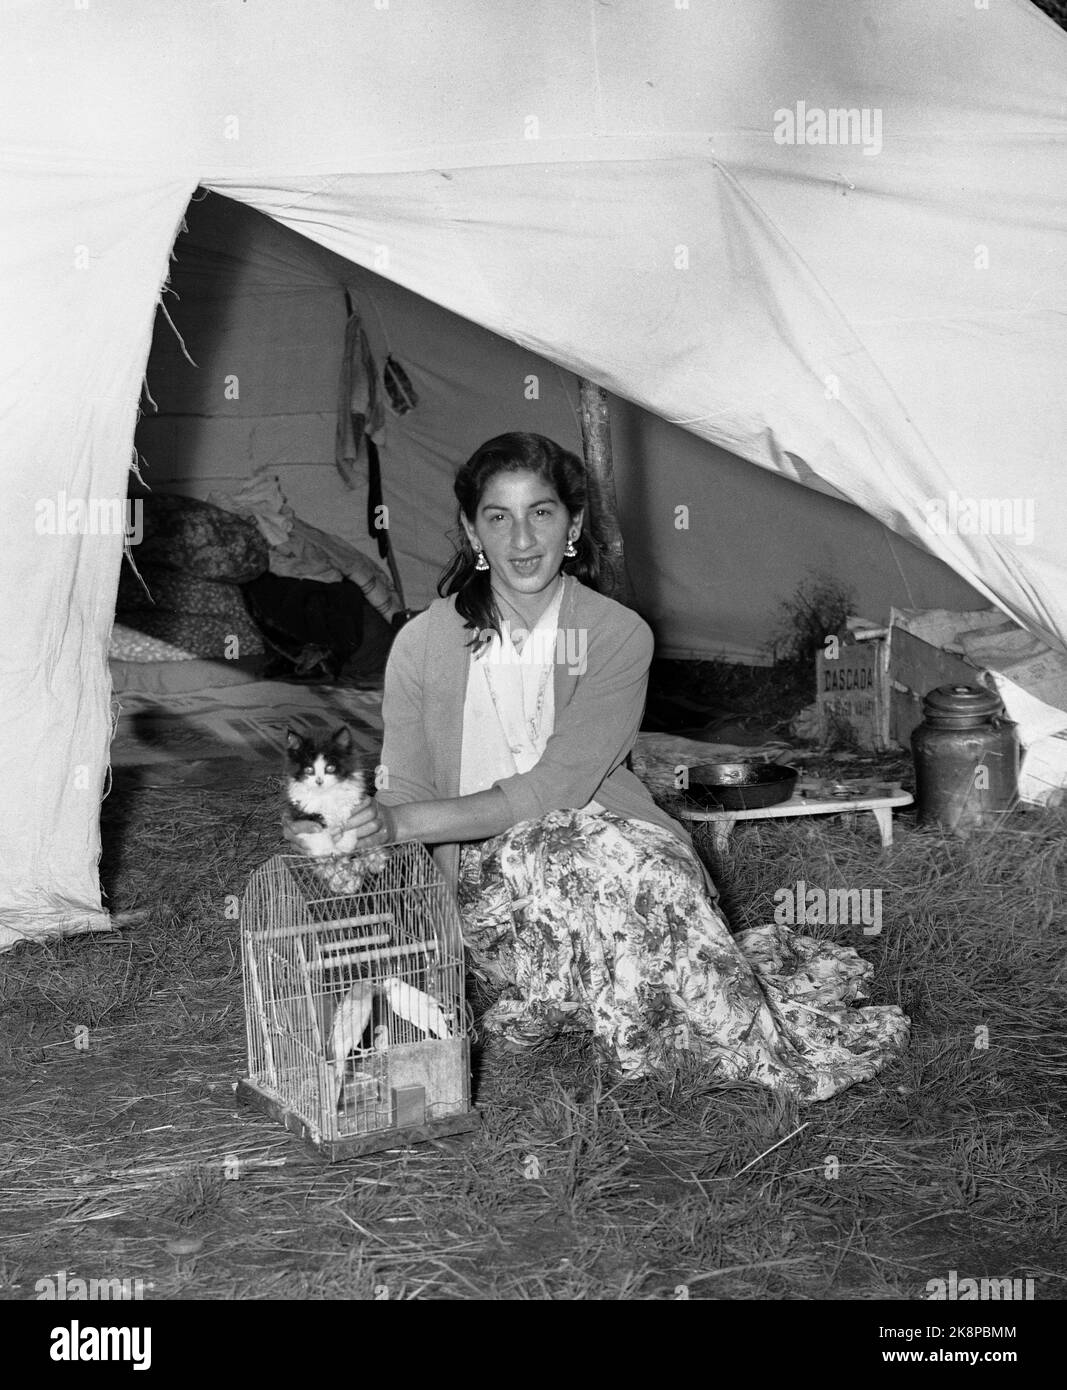 Hokksund 19590709 jeune tzigane appartenant à un groupe de tziganes / Roumains à Hokksund. La femme est assise dans l'ouverture de tente avec cage d'oiseau et Cat.foto: Knoblauch / NTB / NTB Banque D'Images